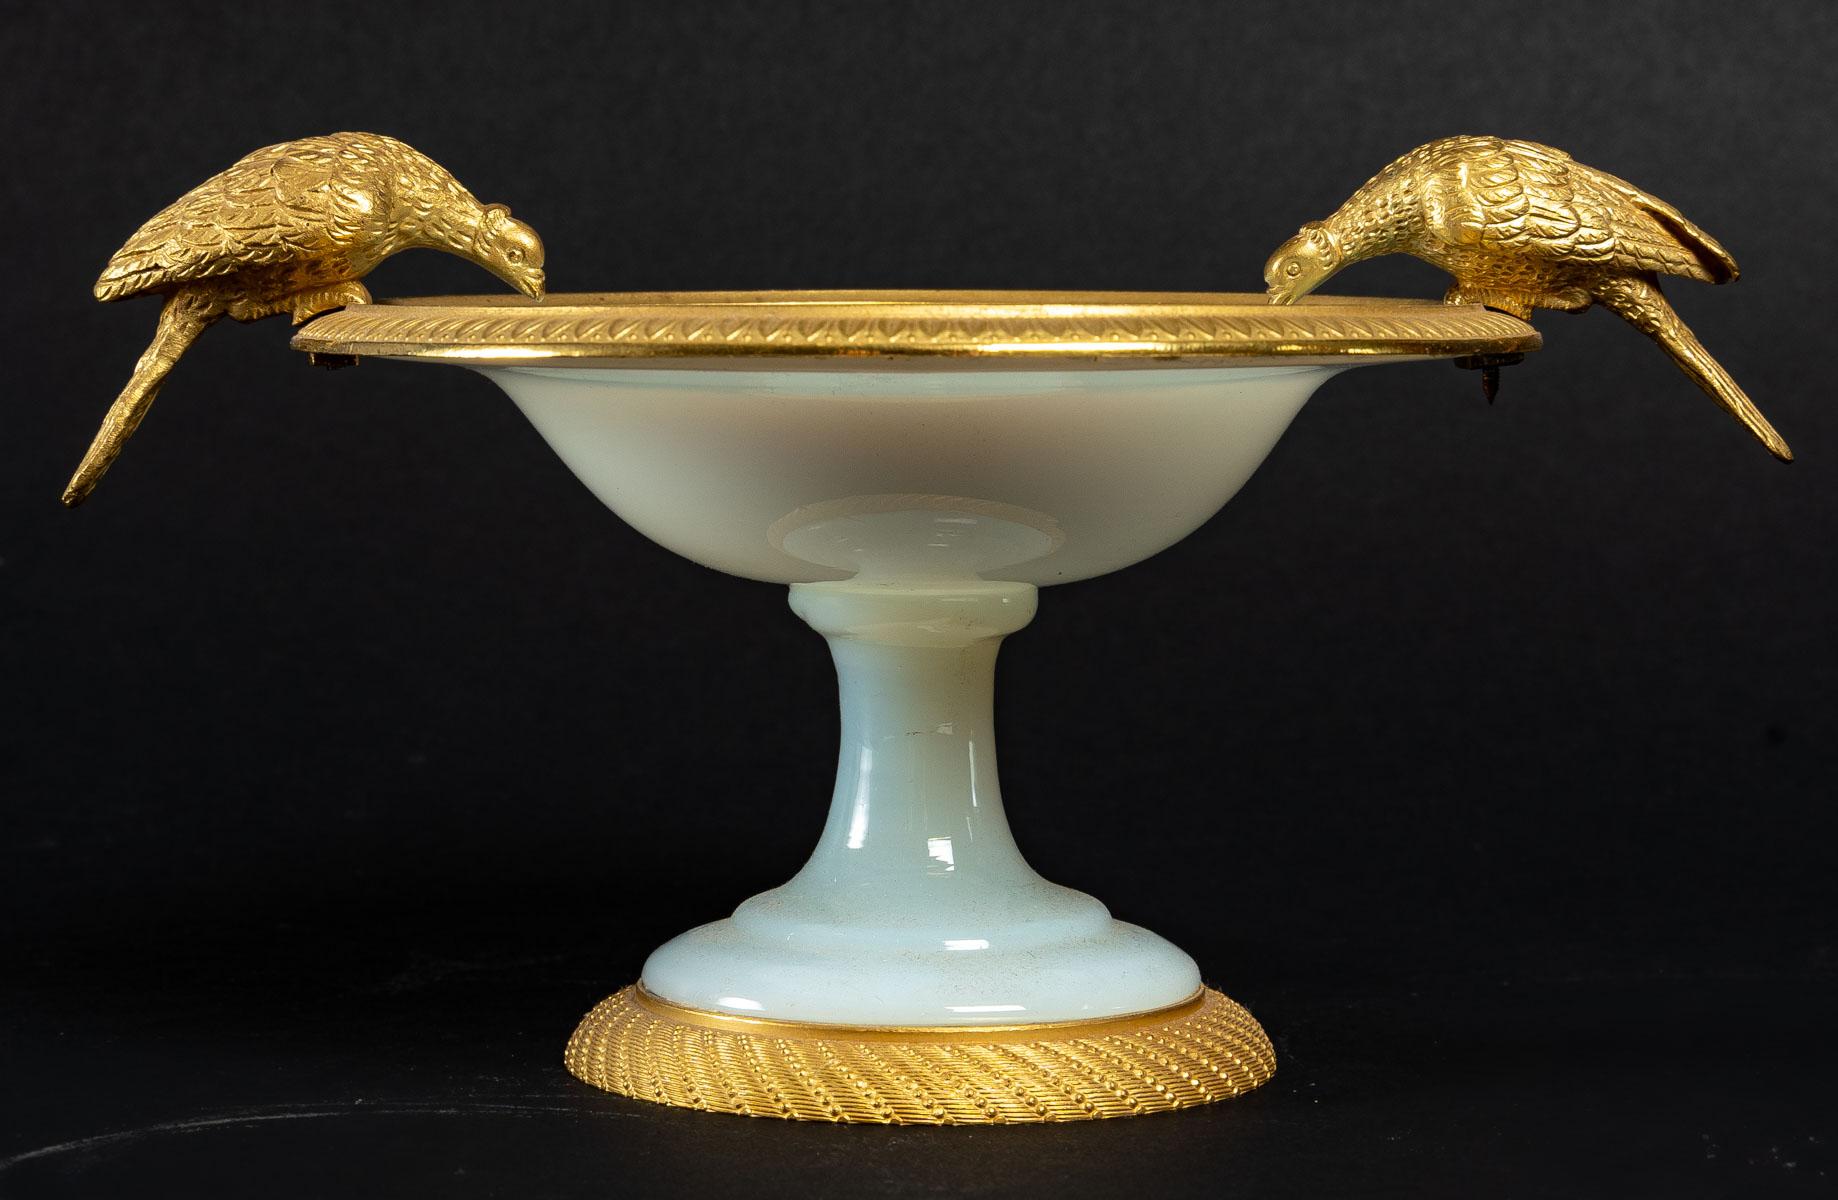 Coupe en opaline blanche, 19e siècle
Coupe en opaline blanche d'époque Charles X, 19e siècle, bronze doré.
Dimensions : H : 11 cm, L : 20 cm, P : 13,5 cm : H : 11 cm, L : 20 cm, P : 13,5 cm.
   